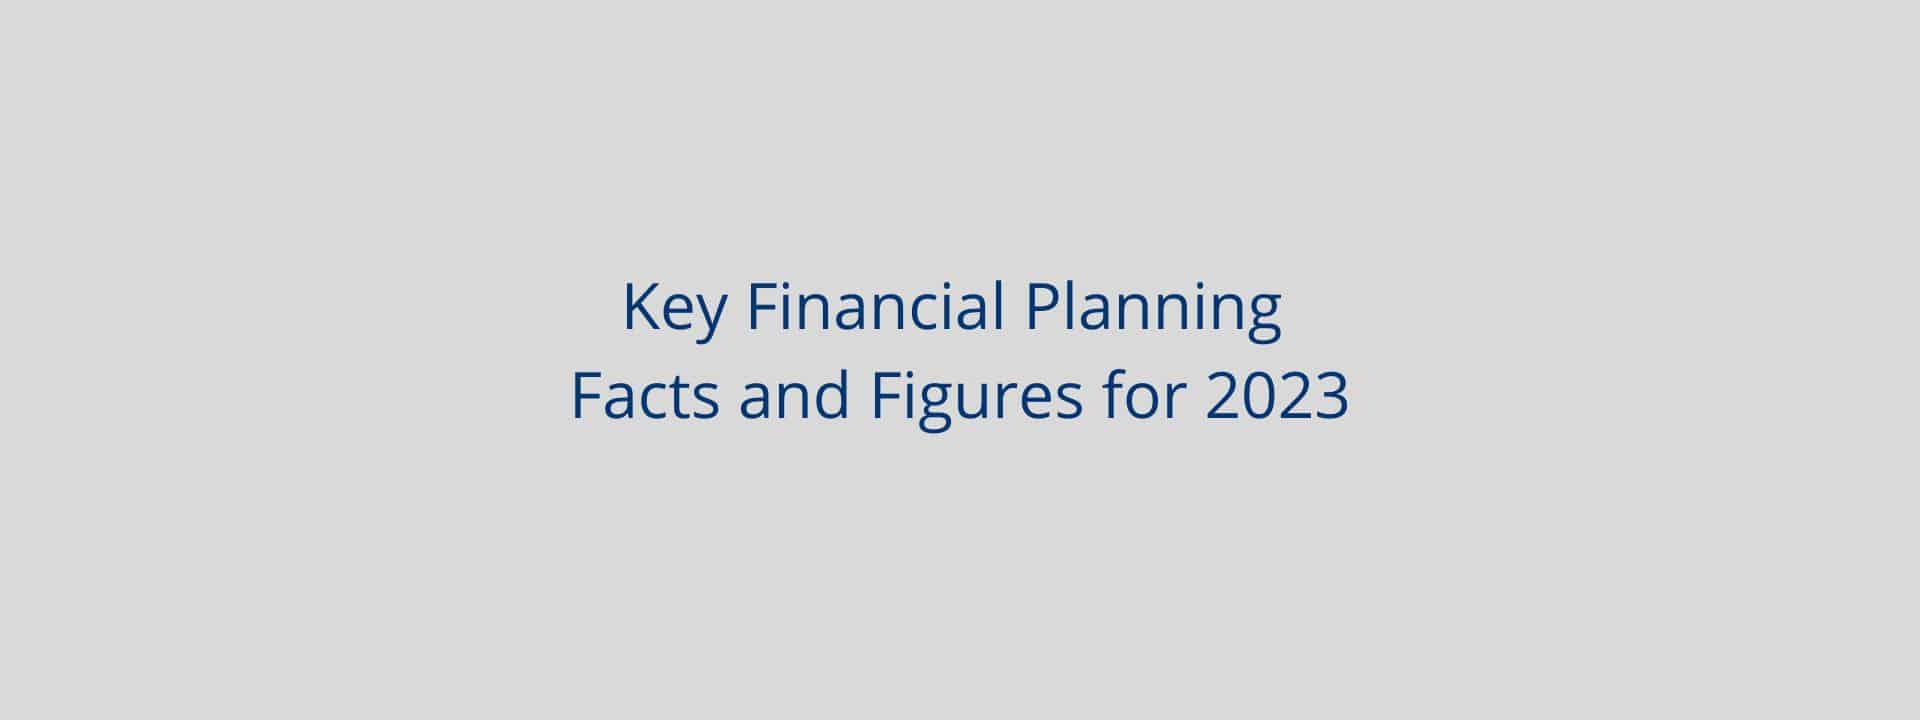 Key Financial Planning